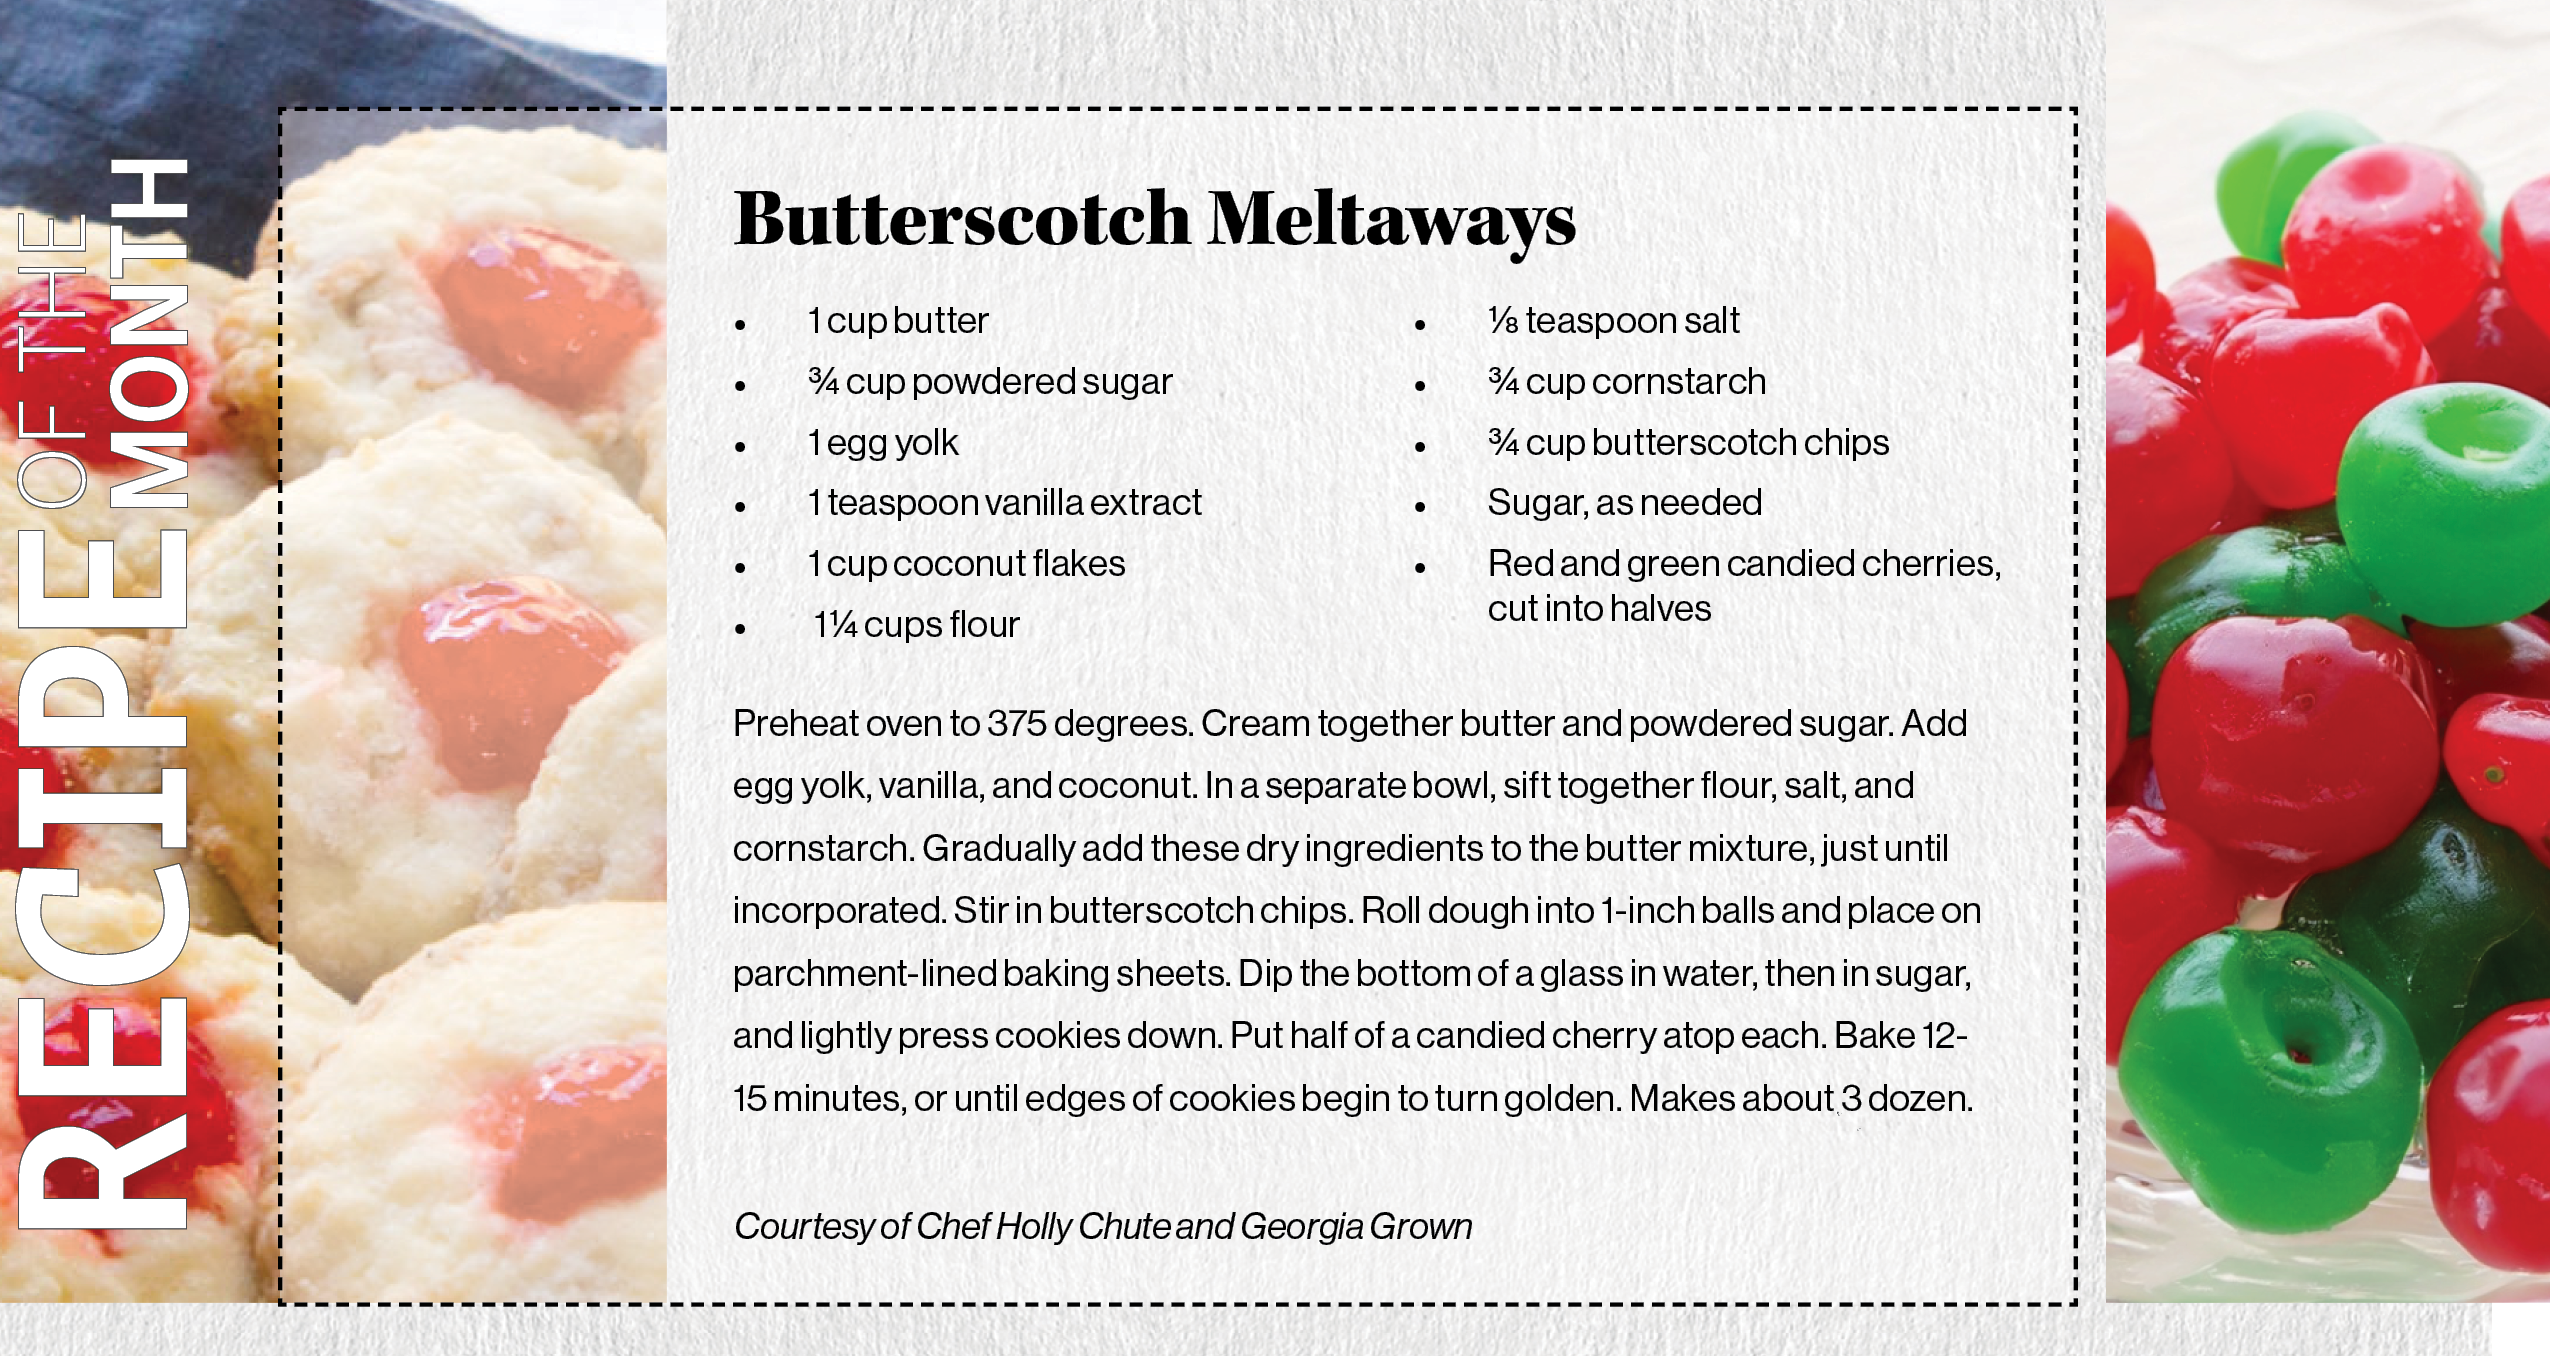 Butterscotch Meltaways